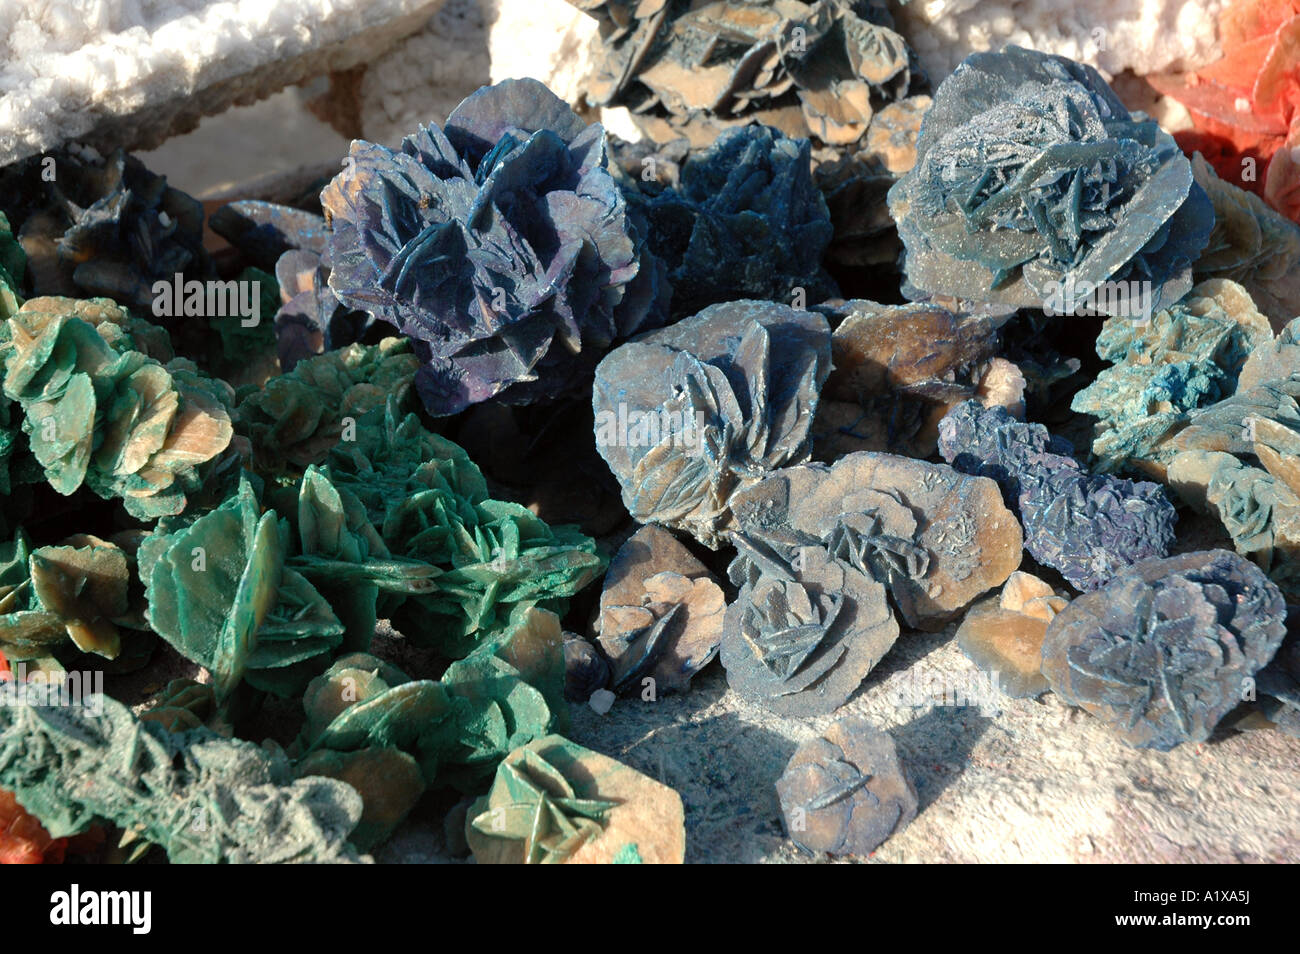 Souvenirs-Stall mit Wüste Rosen am Straßenrand Damm überqueren Chott el Jerid See in Tunesien Stockfoto